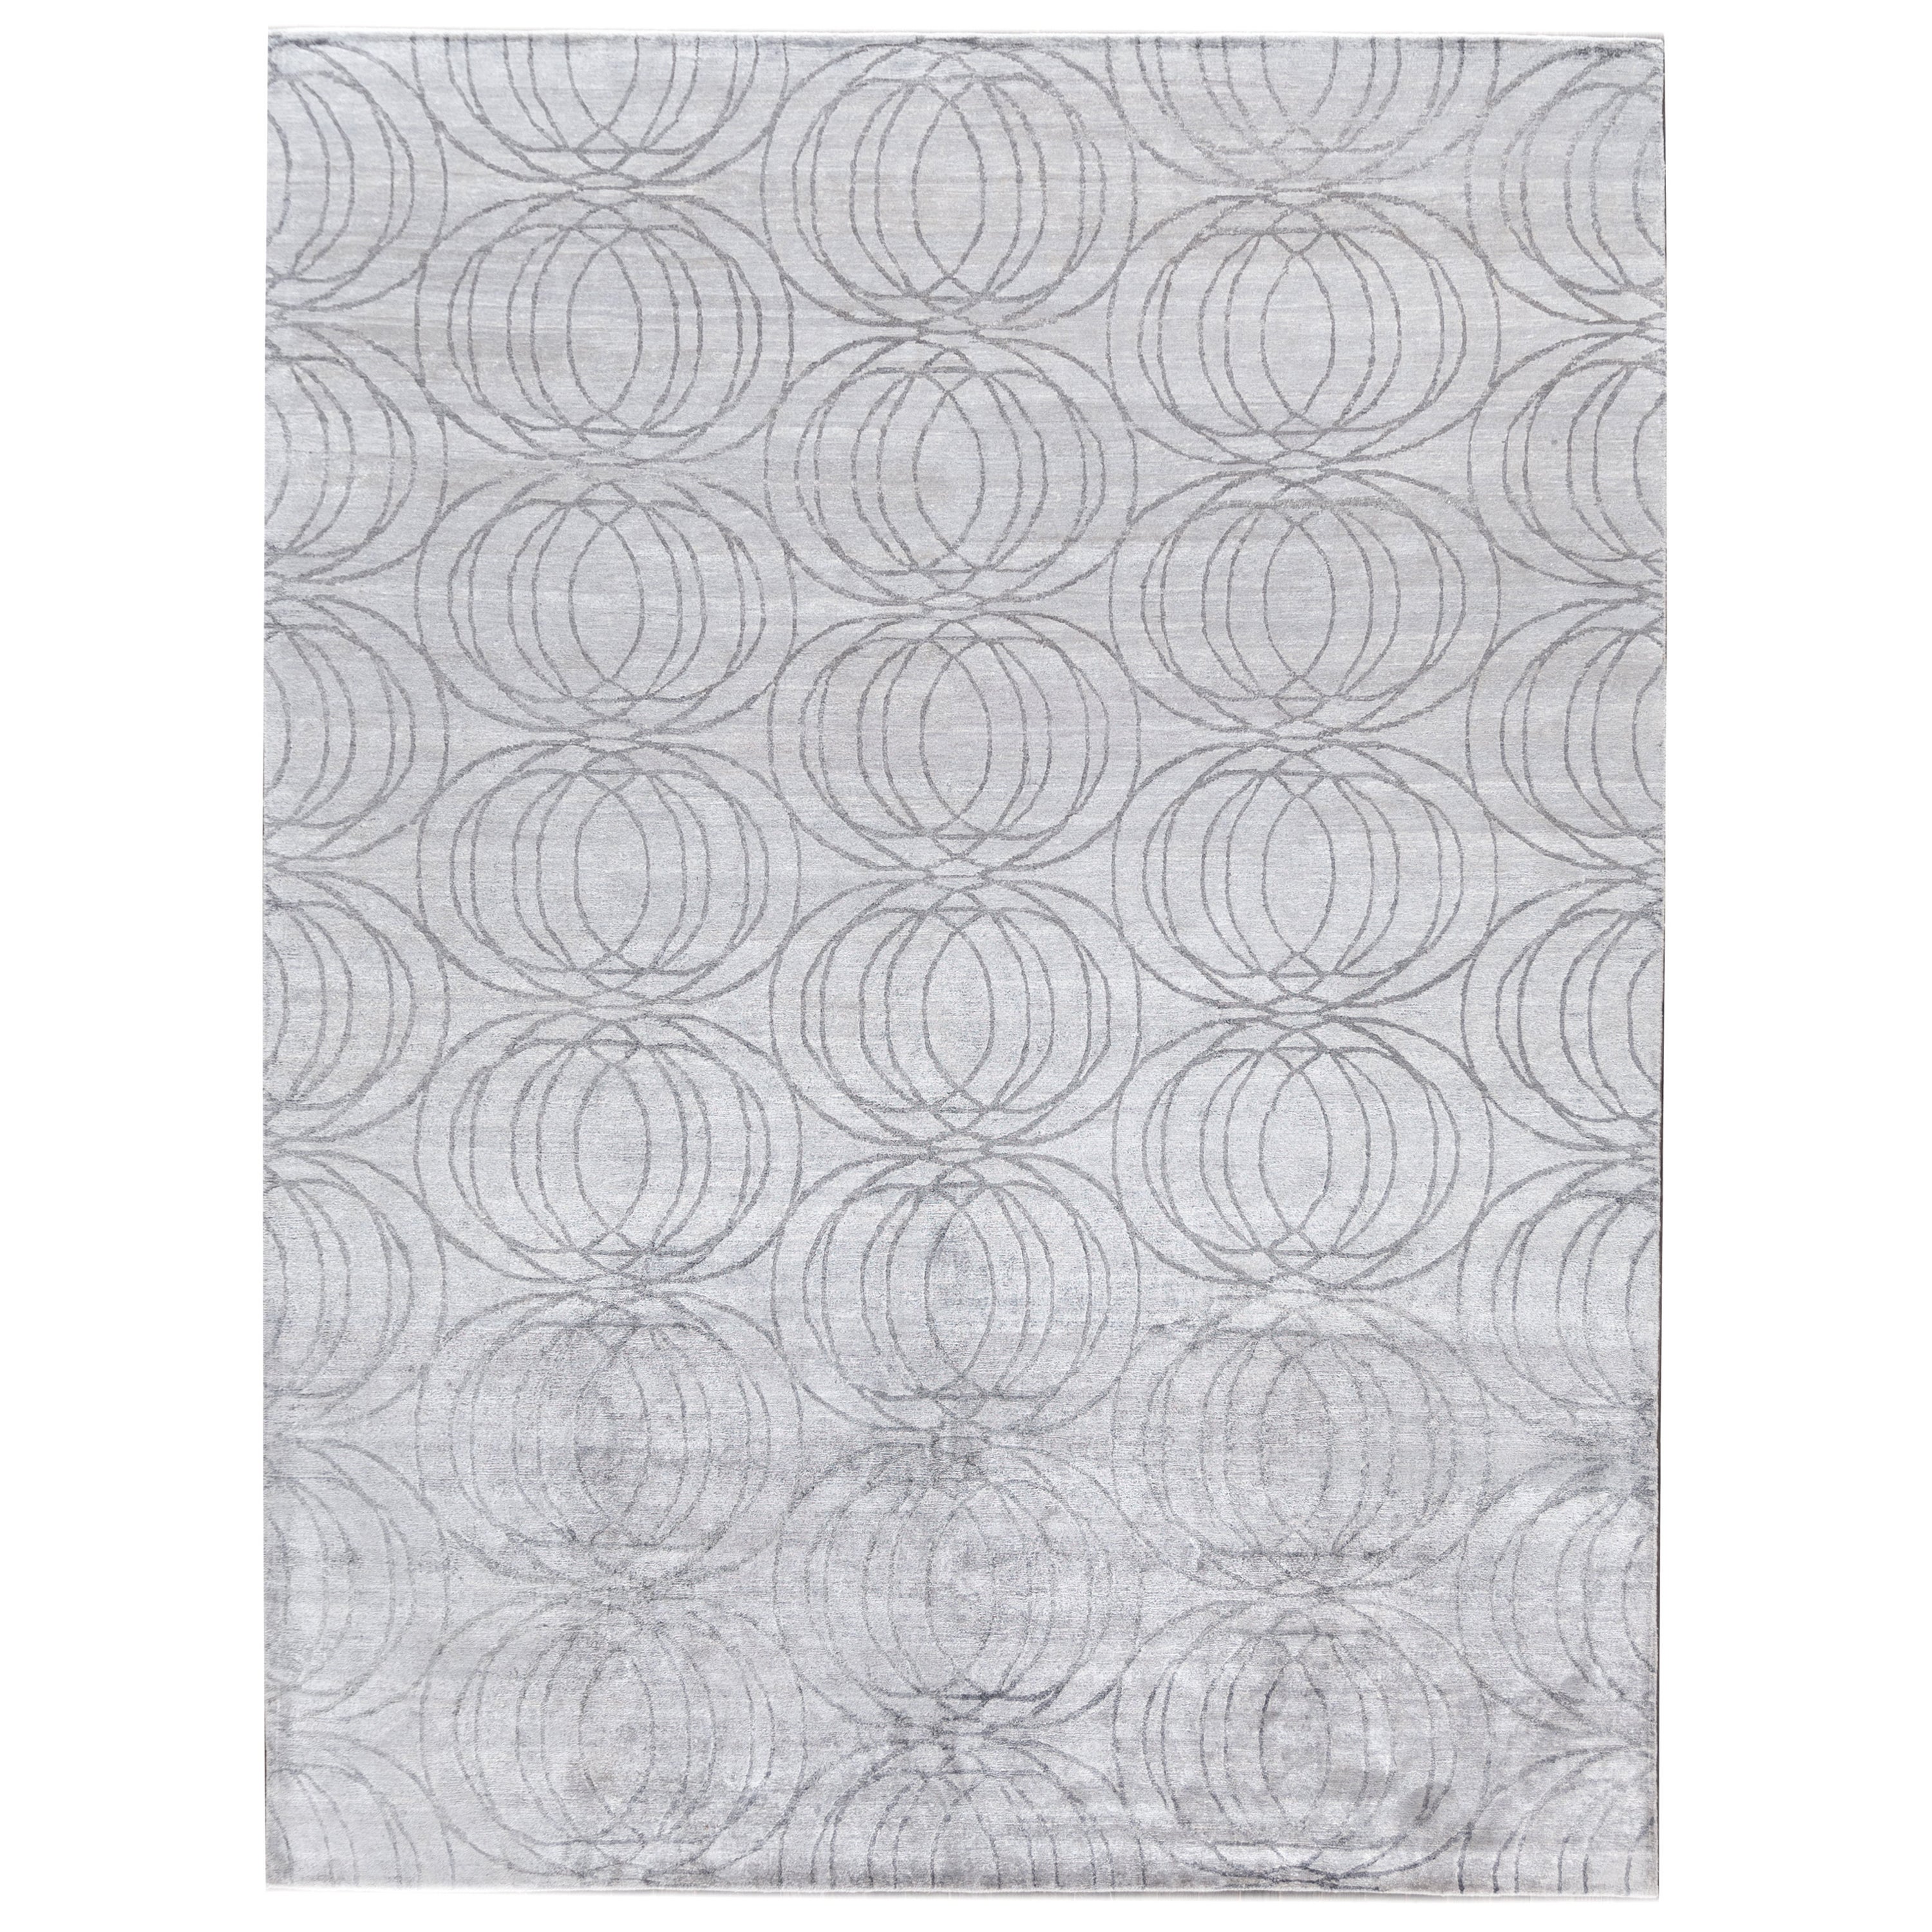 Moderner handgefertigter grauer Teppich aus Wolle und Seide mit nahtlosem, geometrischem Muster